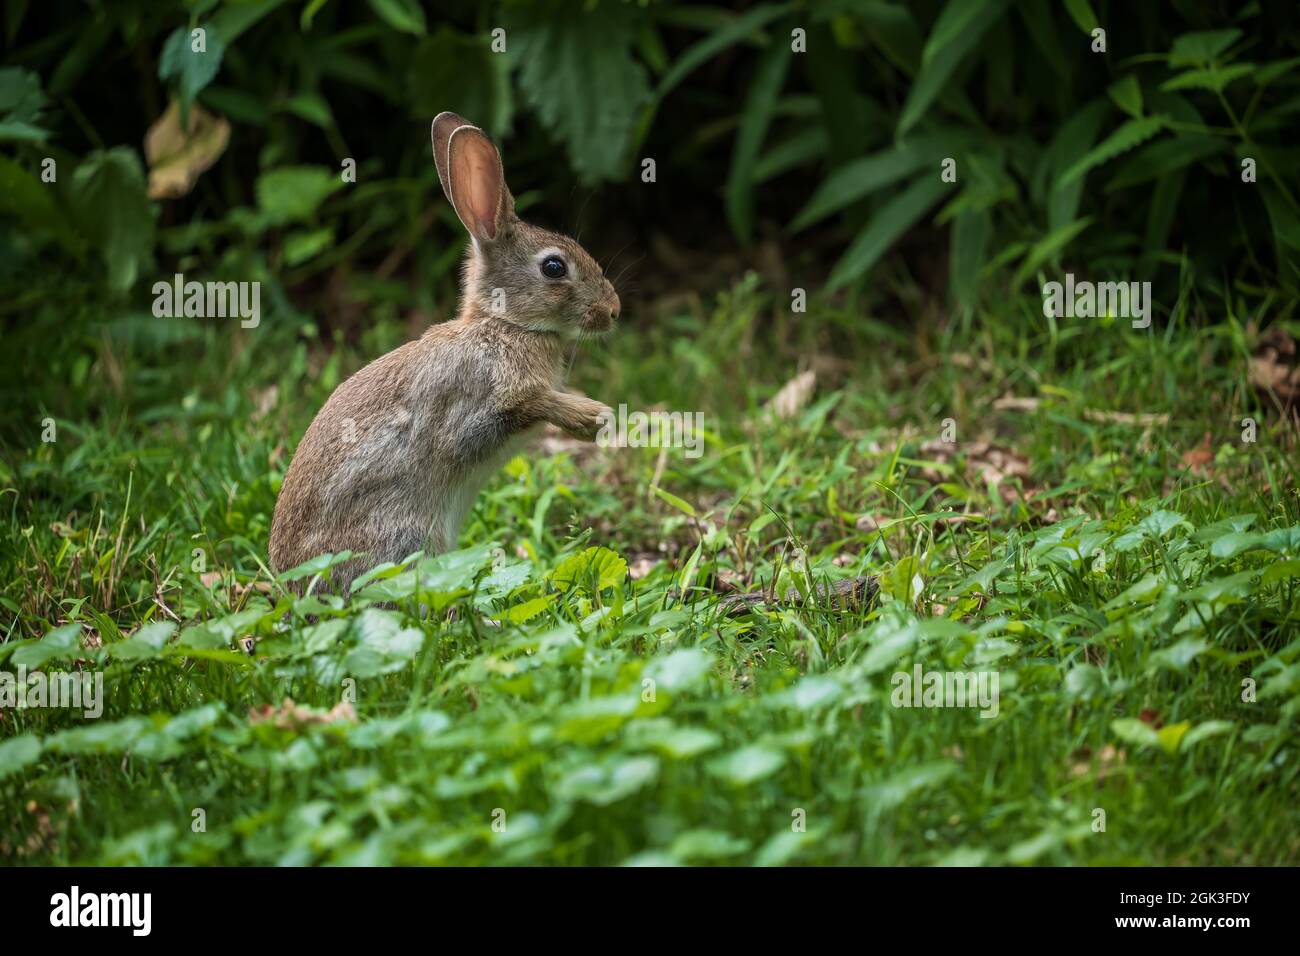 Wildes Kaninchen, das auf zwei Beinen auf der Wiese steht, junger Hase, niedliches kleines Säugetier in der Familie: Leporidae Stockfoto